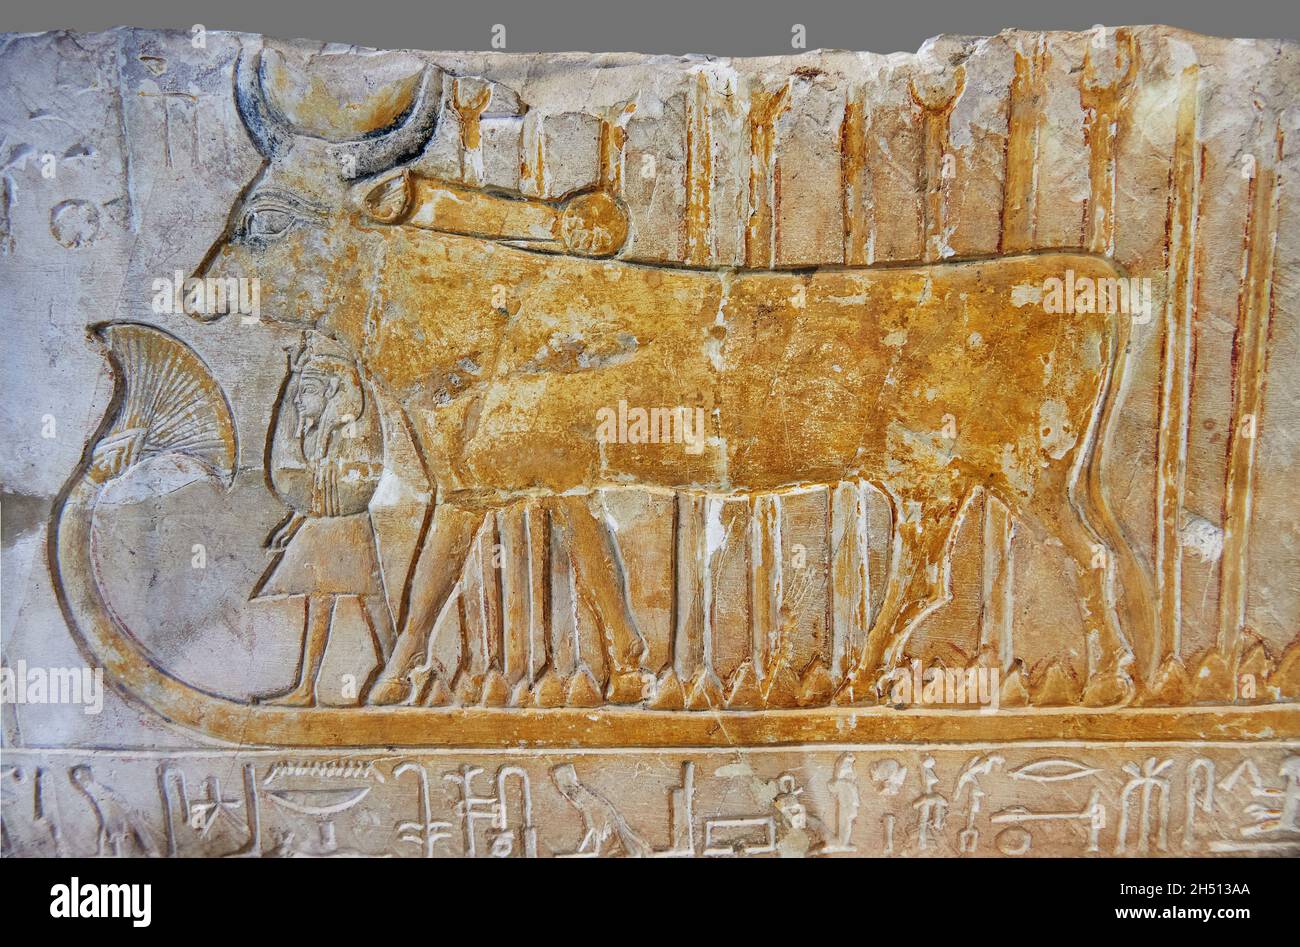 Antica tomba egiziana rilievo architrave di Doddess Hathor come una mucca e Amenophis i, 1279-1213 AC, Deir el Medina, mastaba tomba di Khenou roomm 4. Feritoia Foto Stock